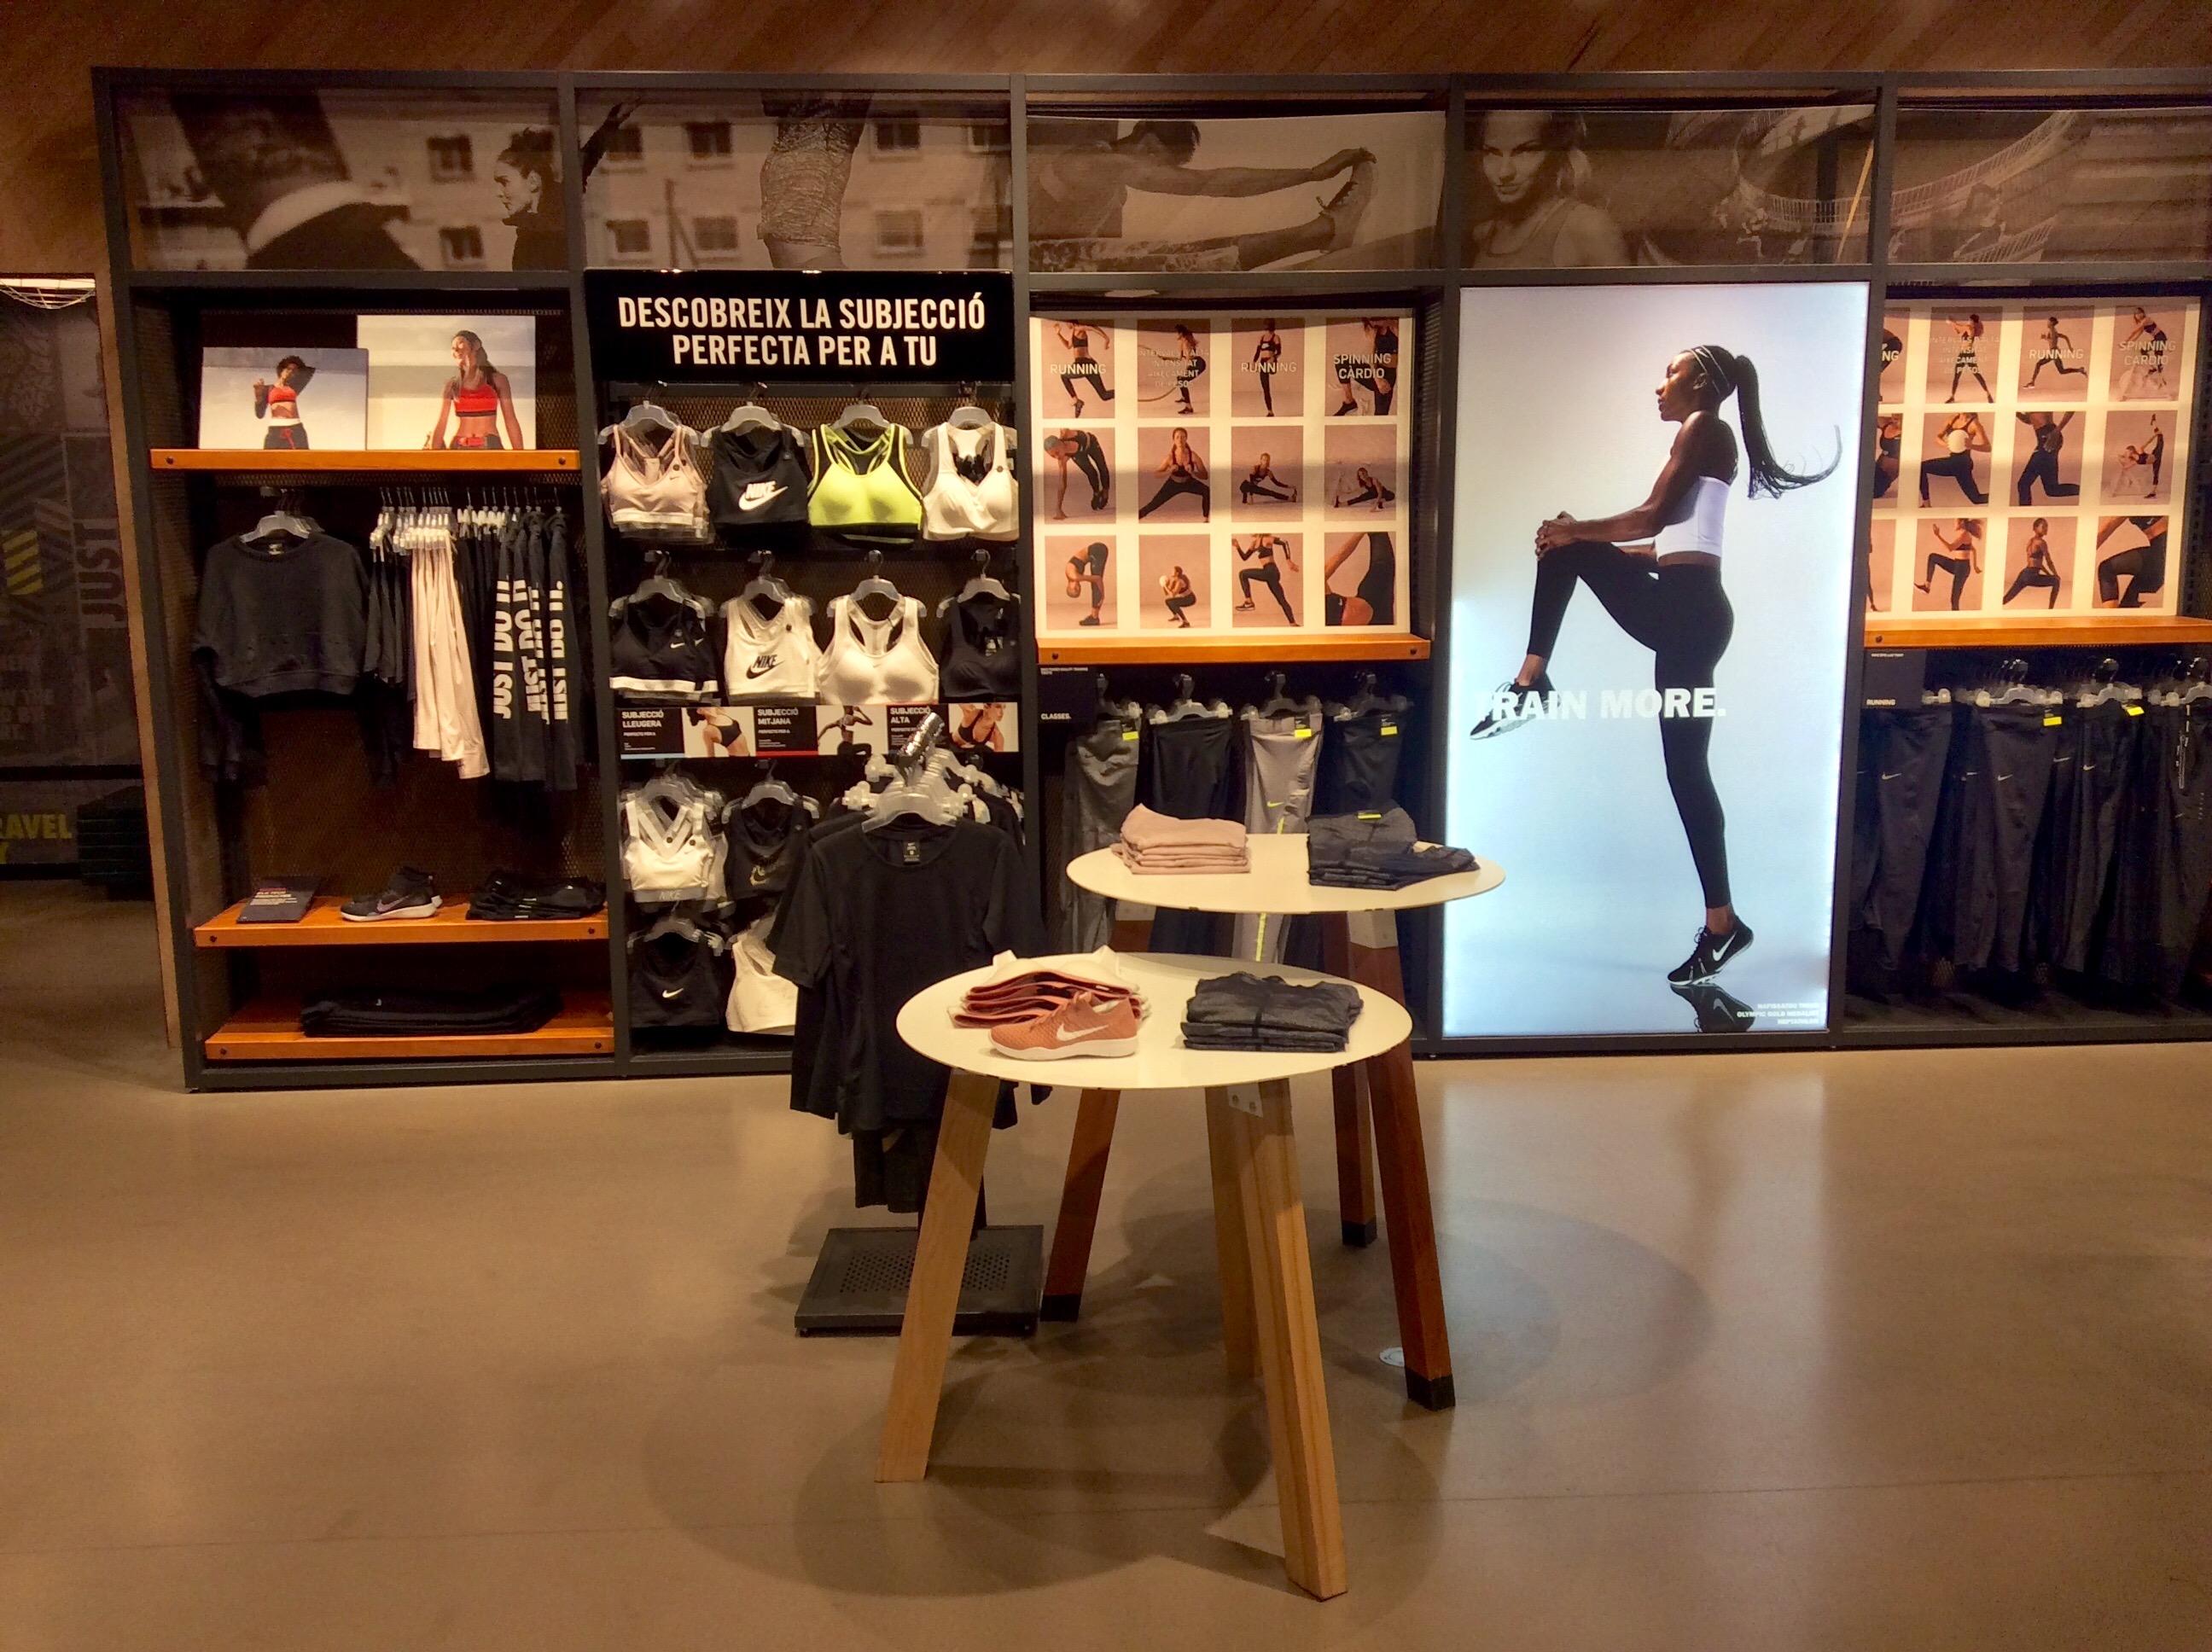 Nike Store Barcelona - La Maquinista - Deportes Y Ocio: Artículos Ropas (Al Por Y Accesorios) en (dirección, horarios, opiniones, 932208...) - Infobel